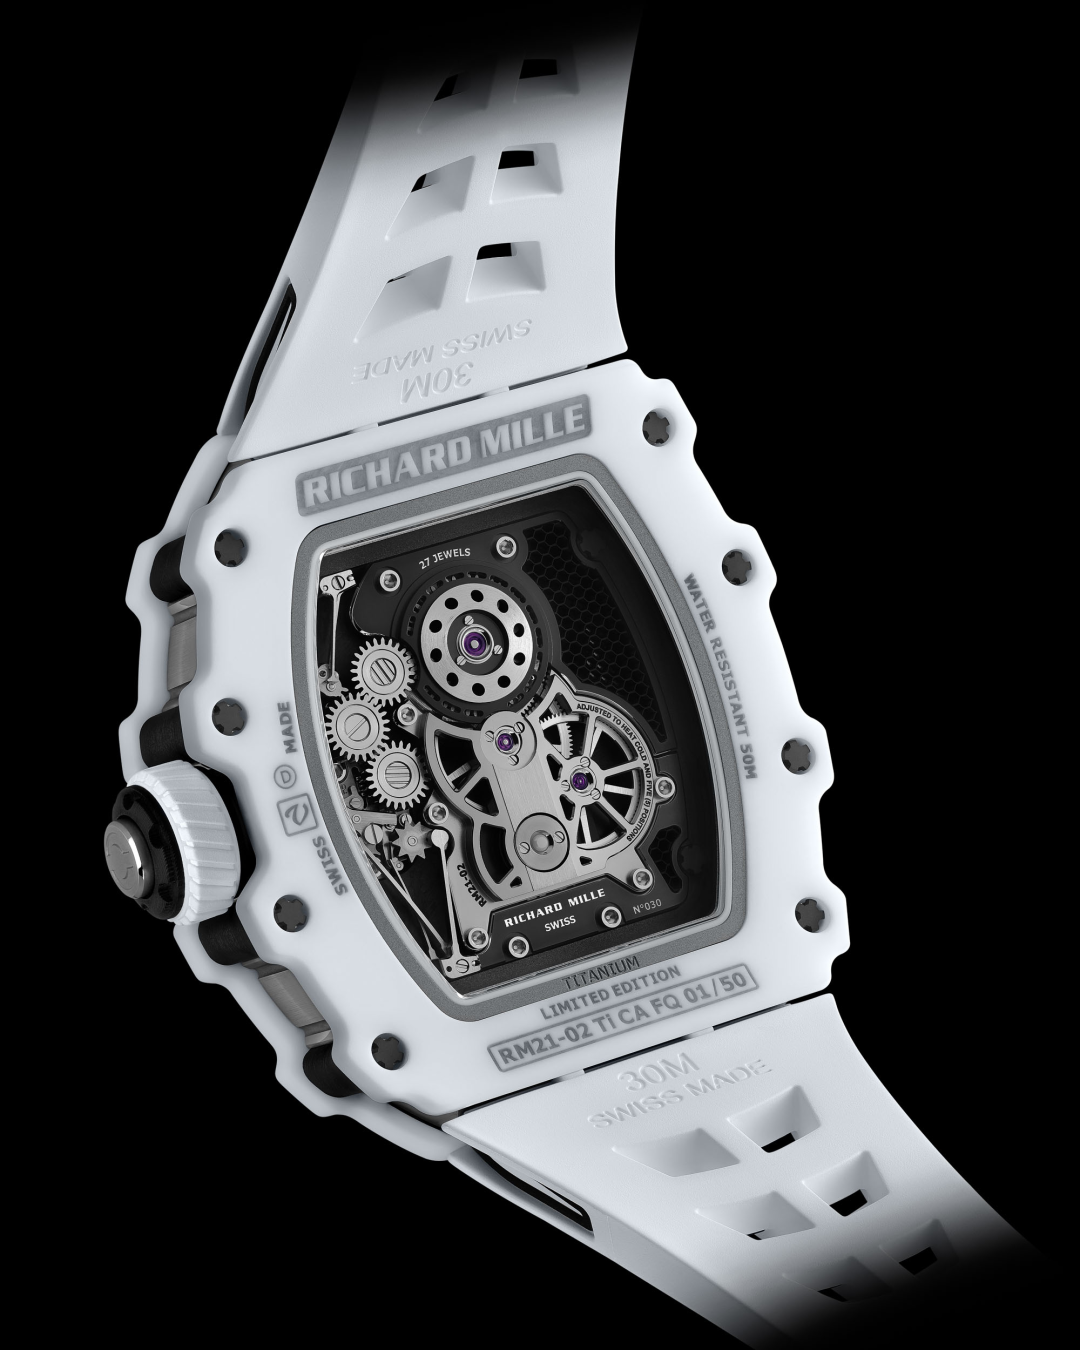 限量50块！「理查米尔」RM21-02腕表发布，仅售656万！